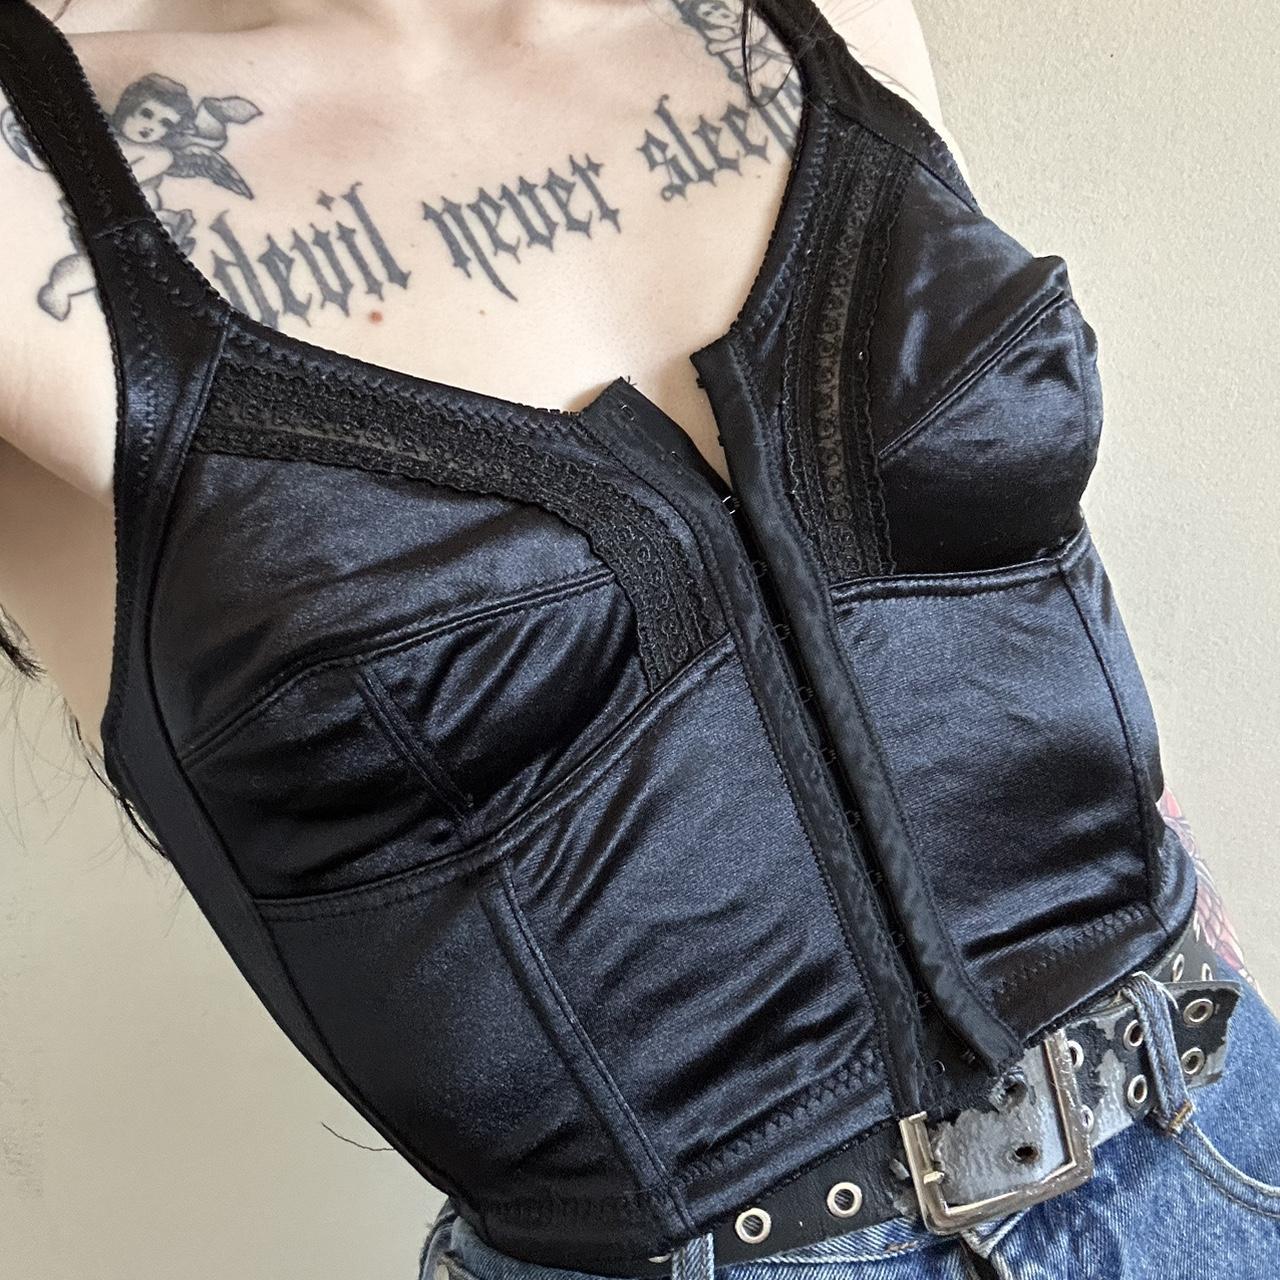 Bra corset-top - Depop